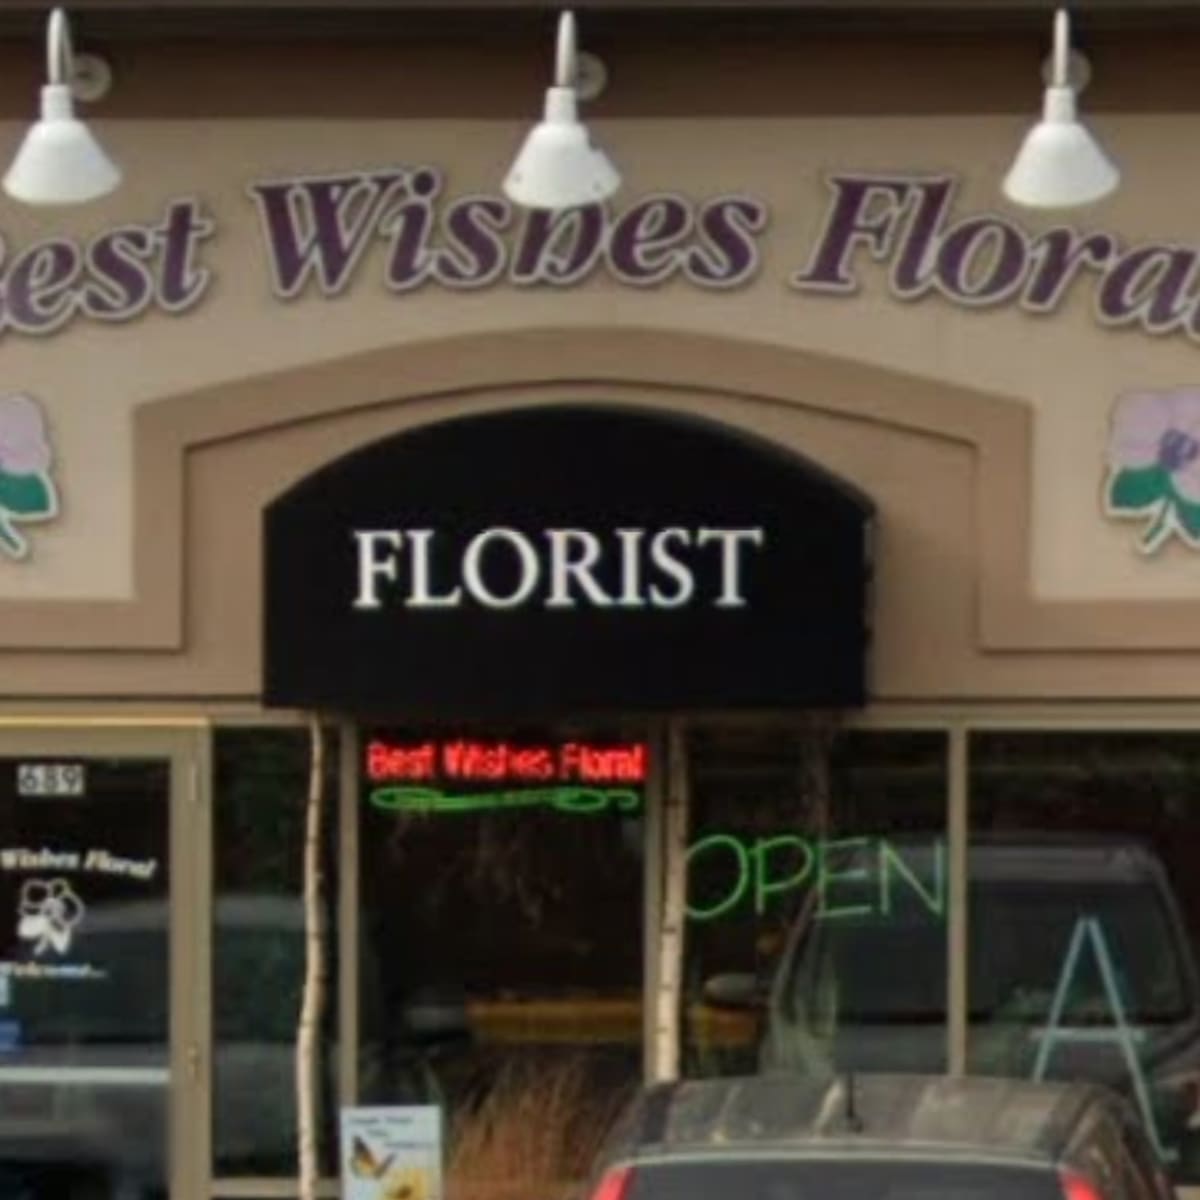 The Mystic Florist Shop